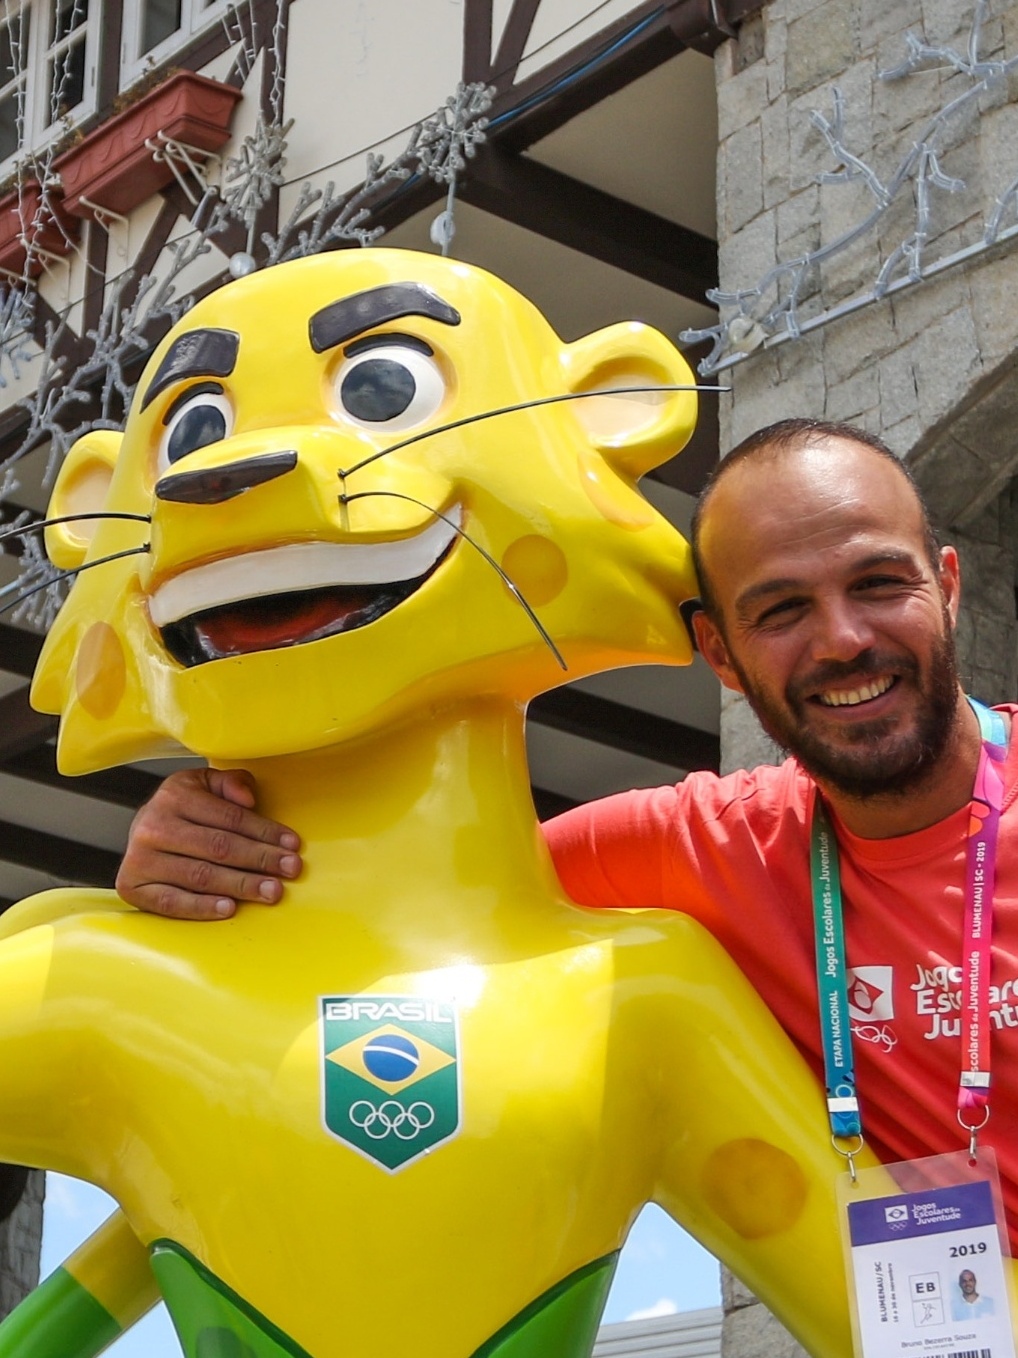 Guanabara Handball - Bruno Souza nasceu em Niterói, e deu seus primeiros  passos no Handebol em sua cidade. Foi no Niterói Rugby que ele se revelou  um dos melhores jogadores do Brasil.